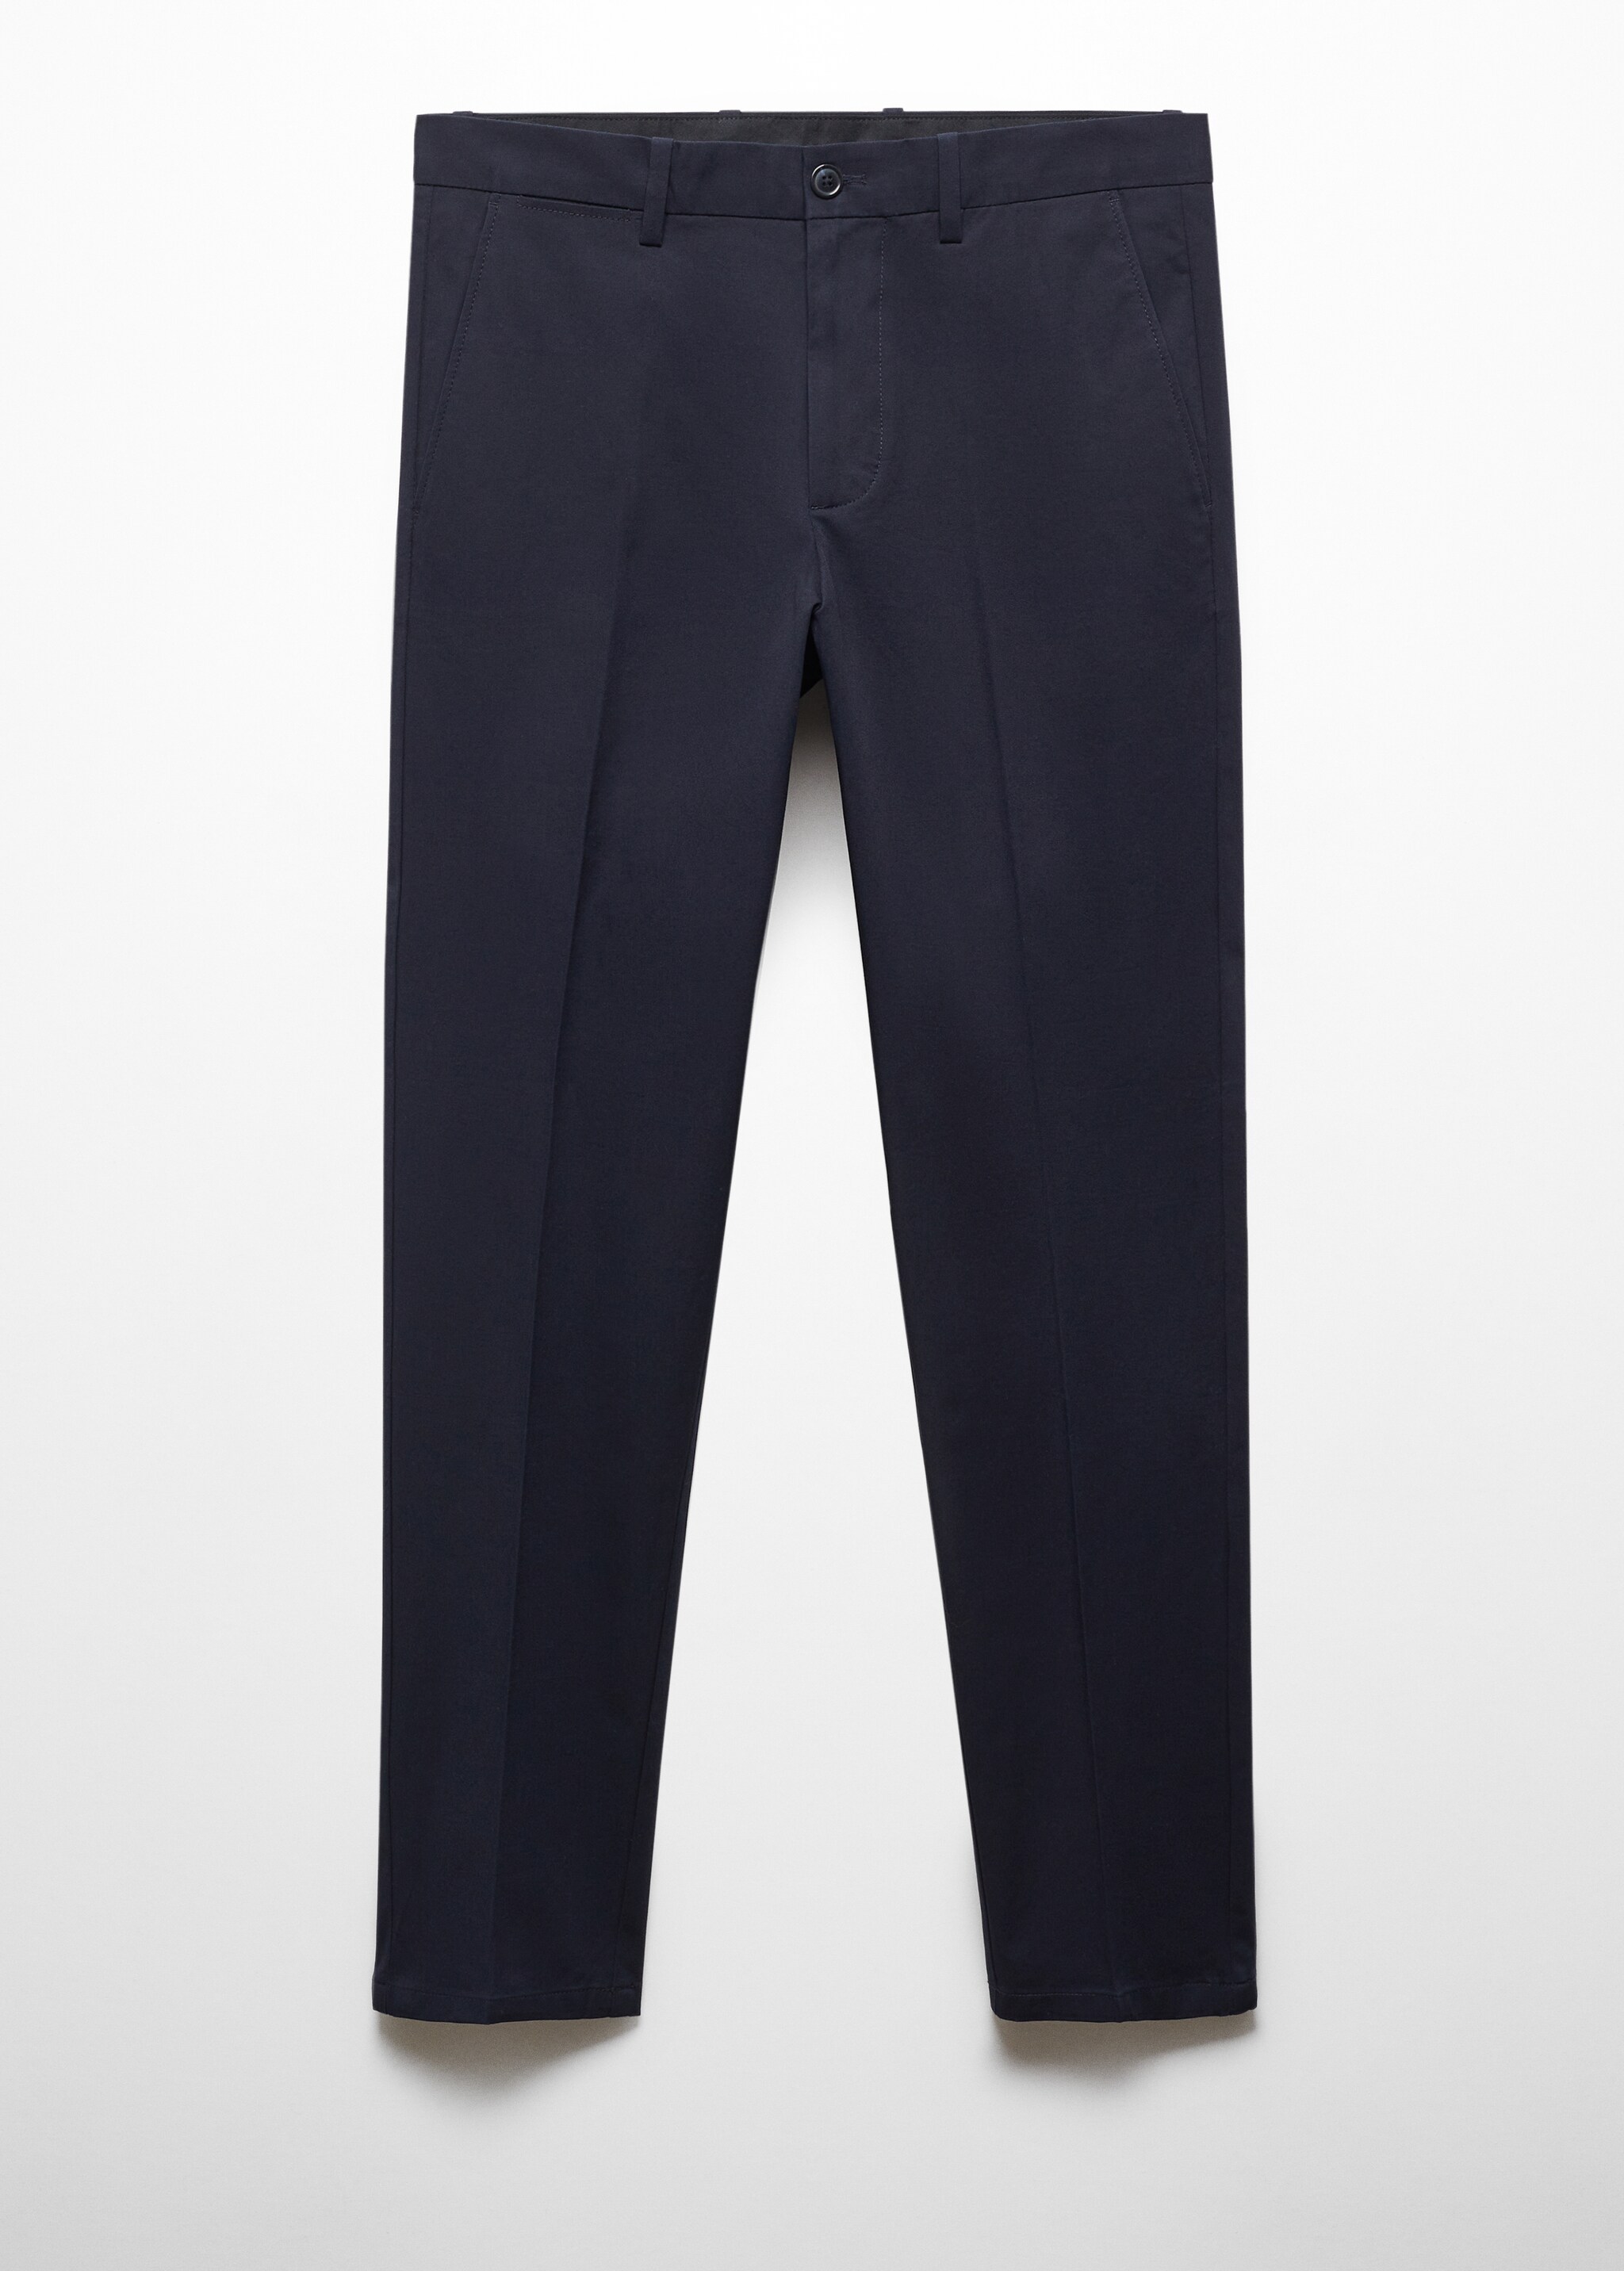 Pantaloni regular-fit cotone - Articolo senza modello